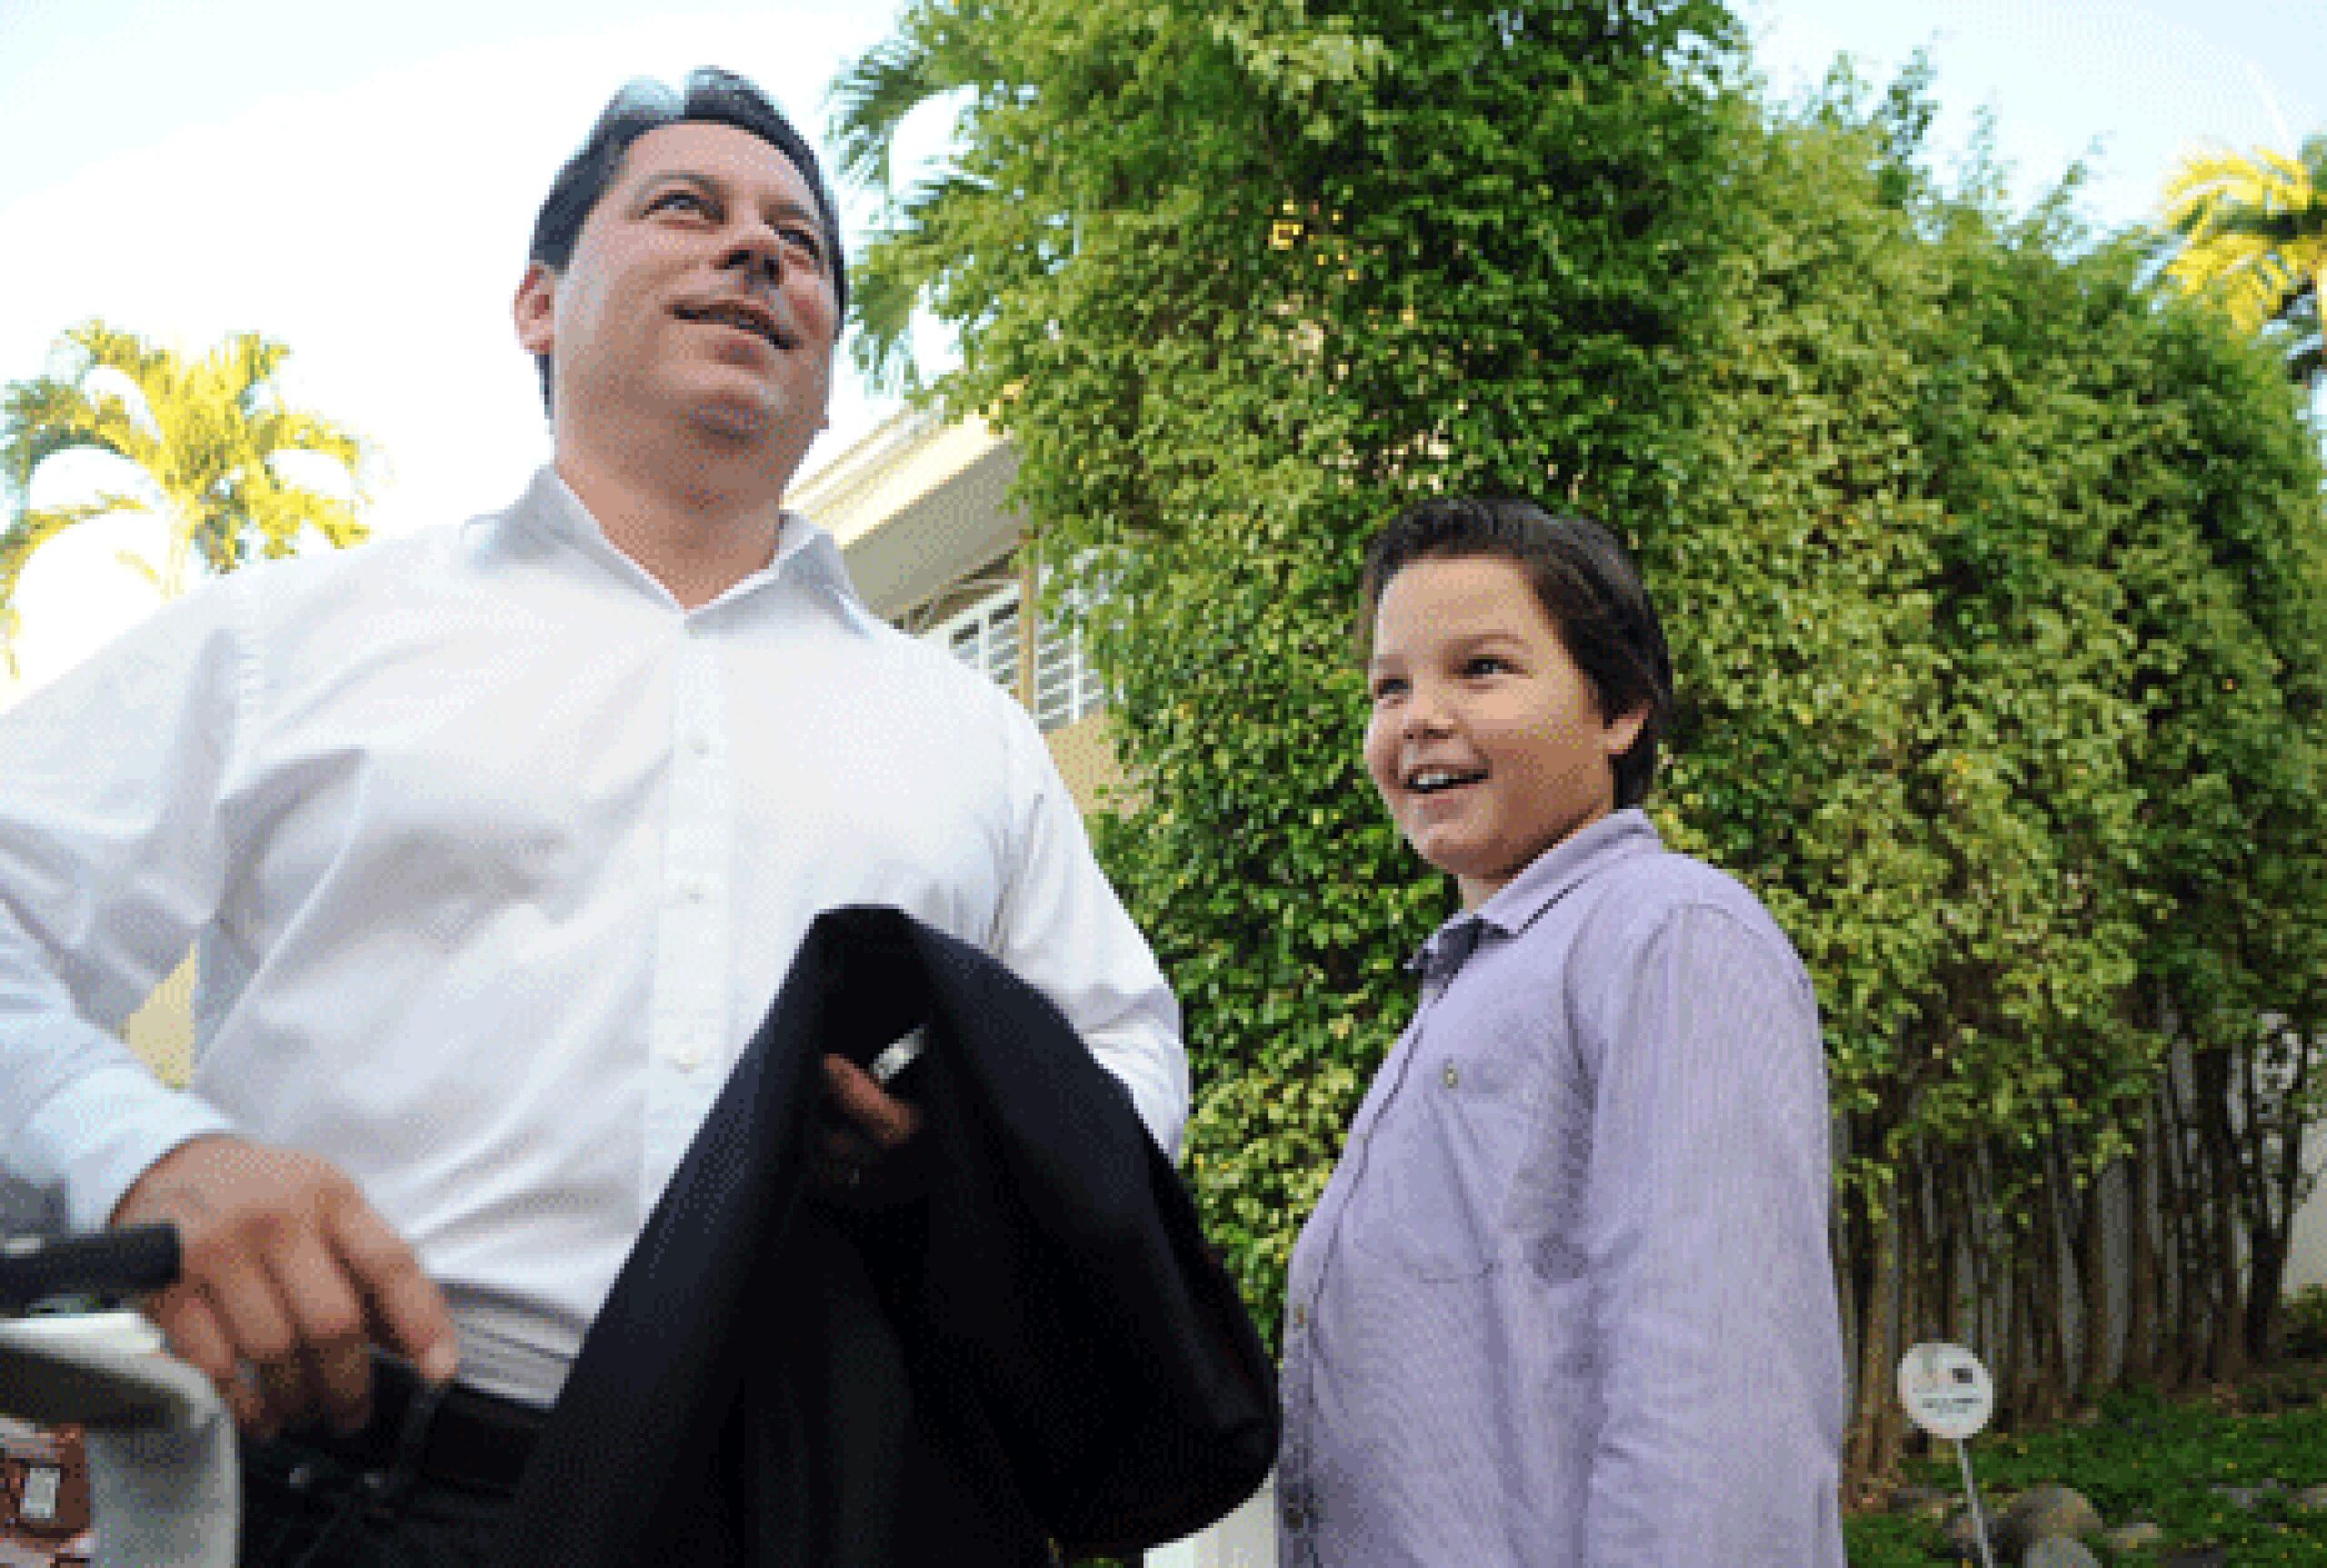 Juan Dalmau en compañía de su hijo Gabriel previo al inicio de la jornada con motivo de las elecciones.   (ana.abruña@gfrmedia.com)